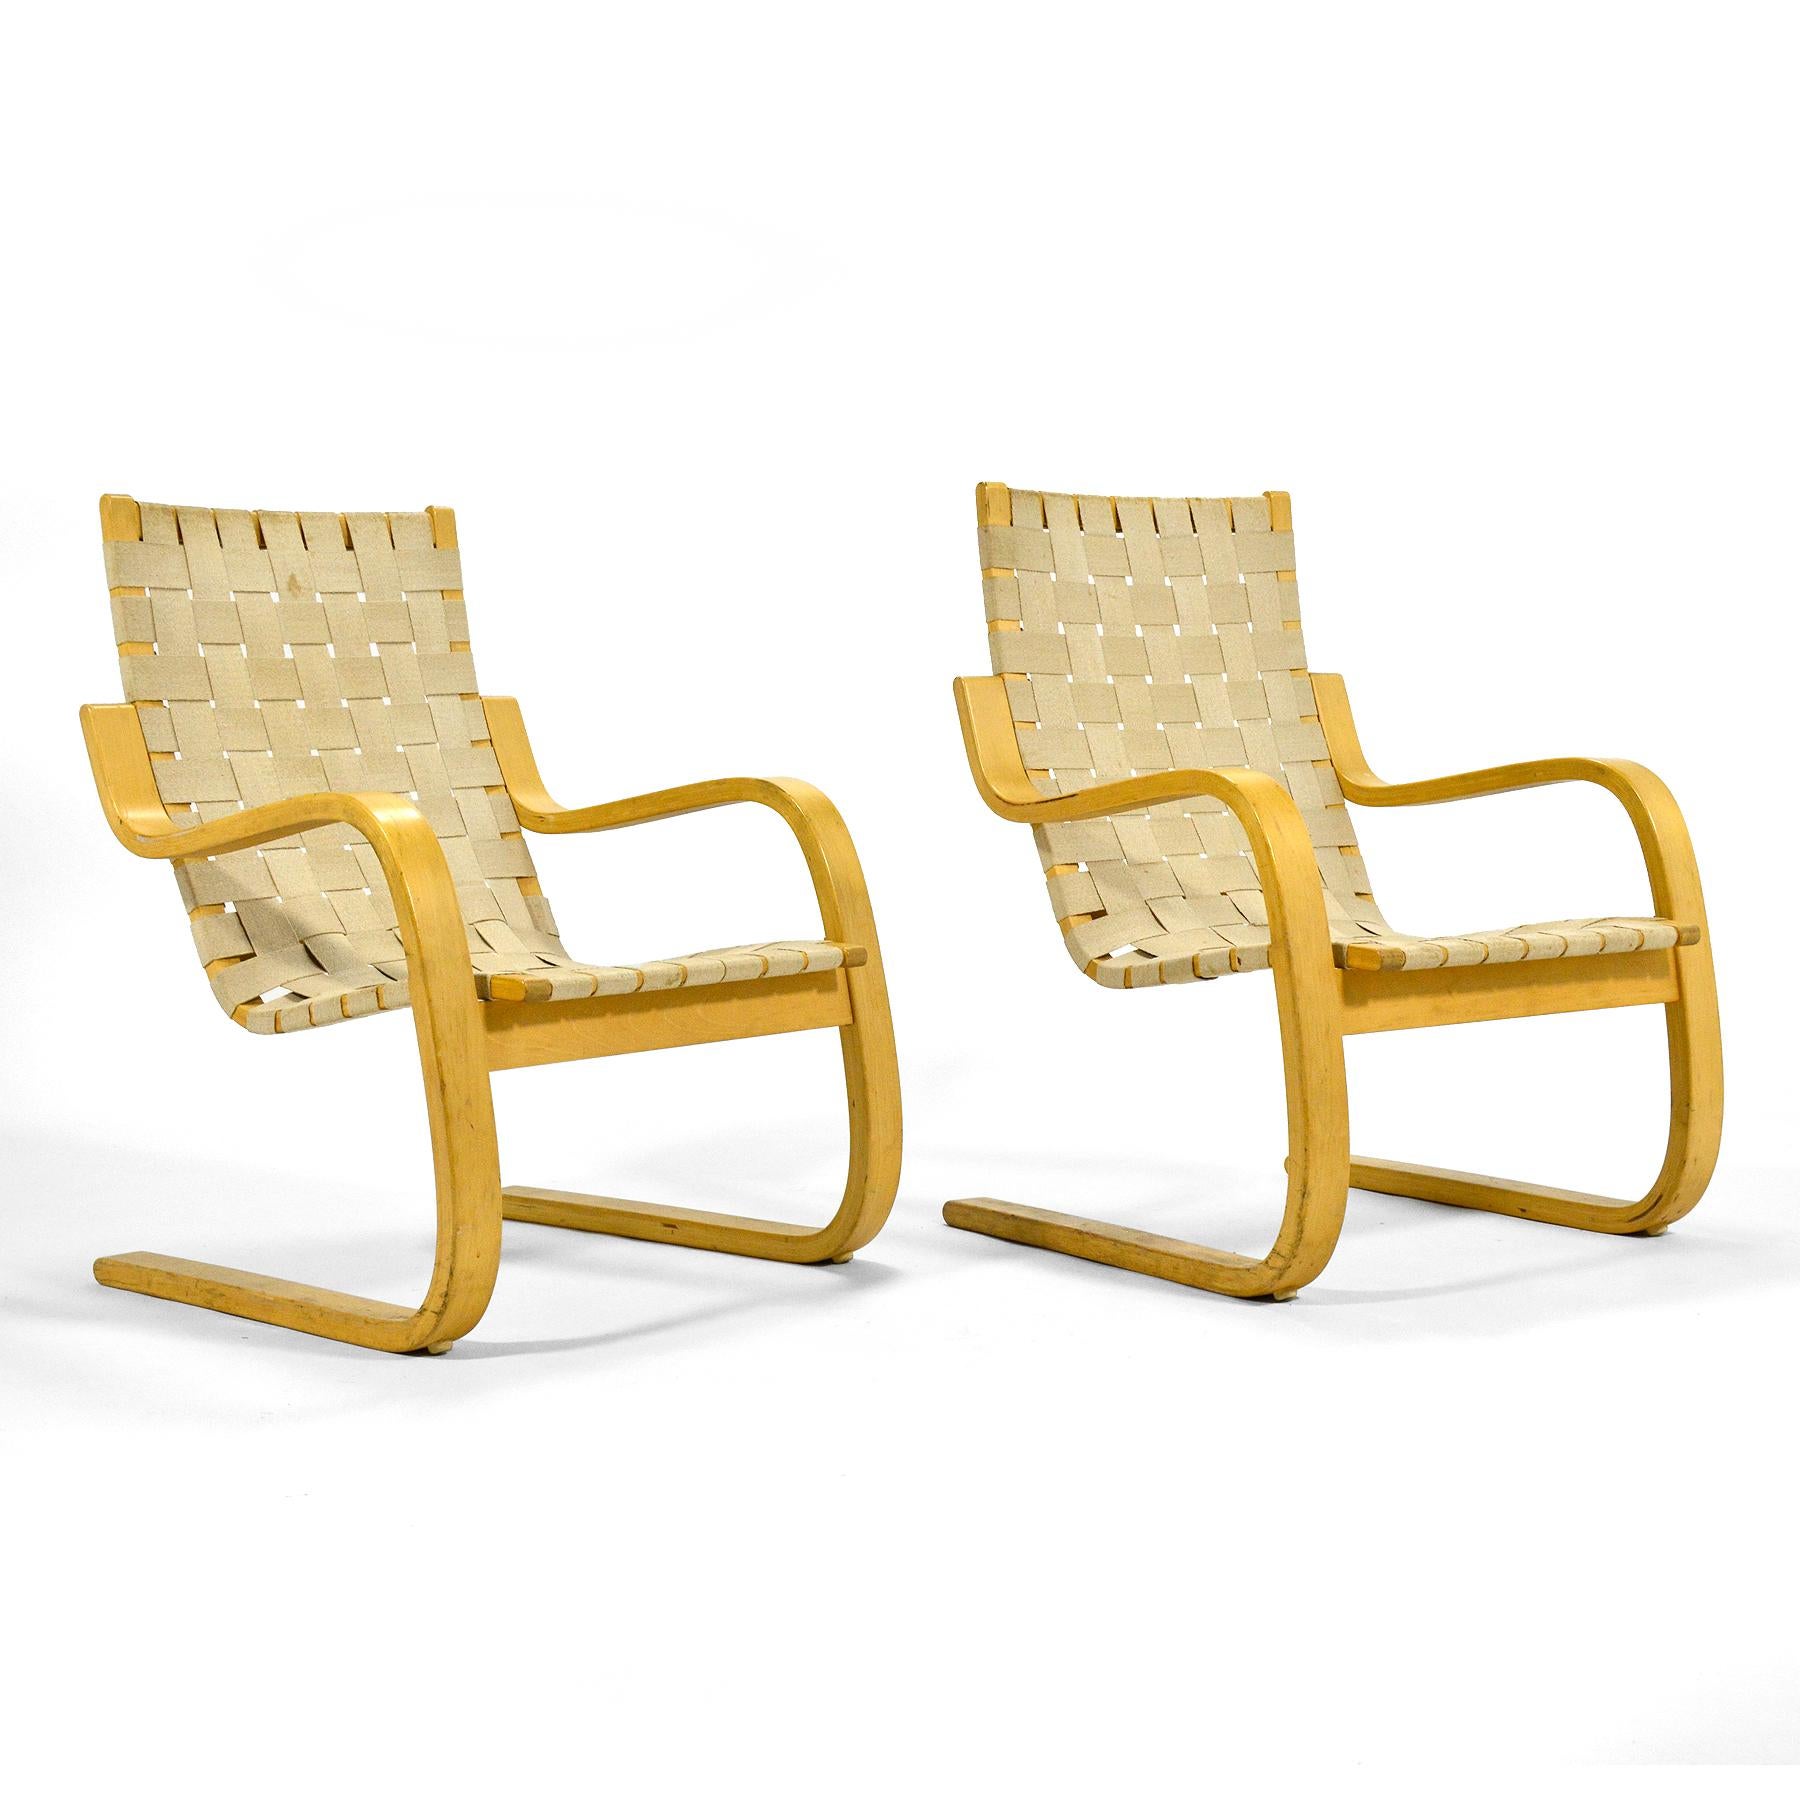 Aaltos Entwurf aus dem Jahr 1936, der Loungesessel Modell 406, ist ein perfektes Beispiel für zurückhaltendes finnisches Design. Das gebogene Holzgestell aus Birkenschichtholz und natürlichem Baumwollgewebe stützt den Sitzenden auf bequeme Weise.